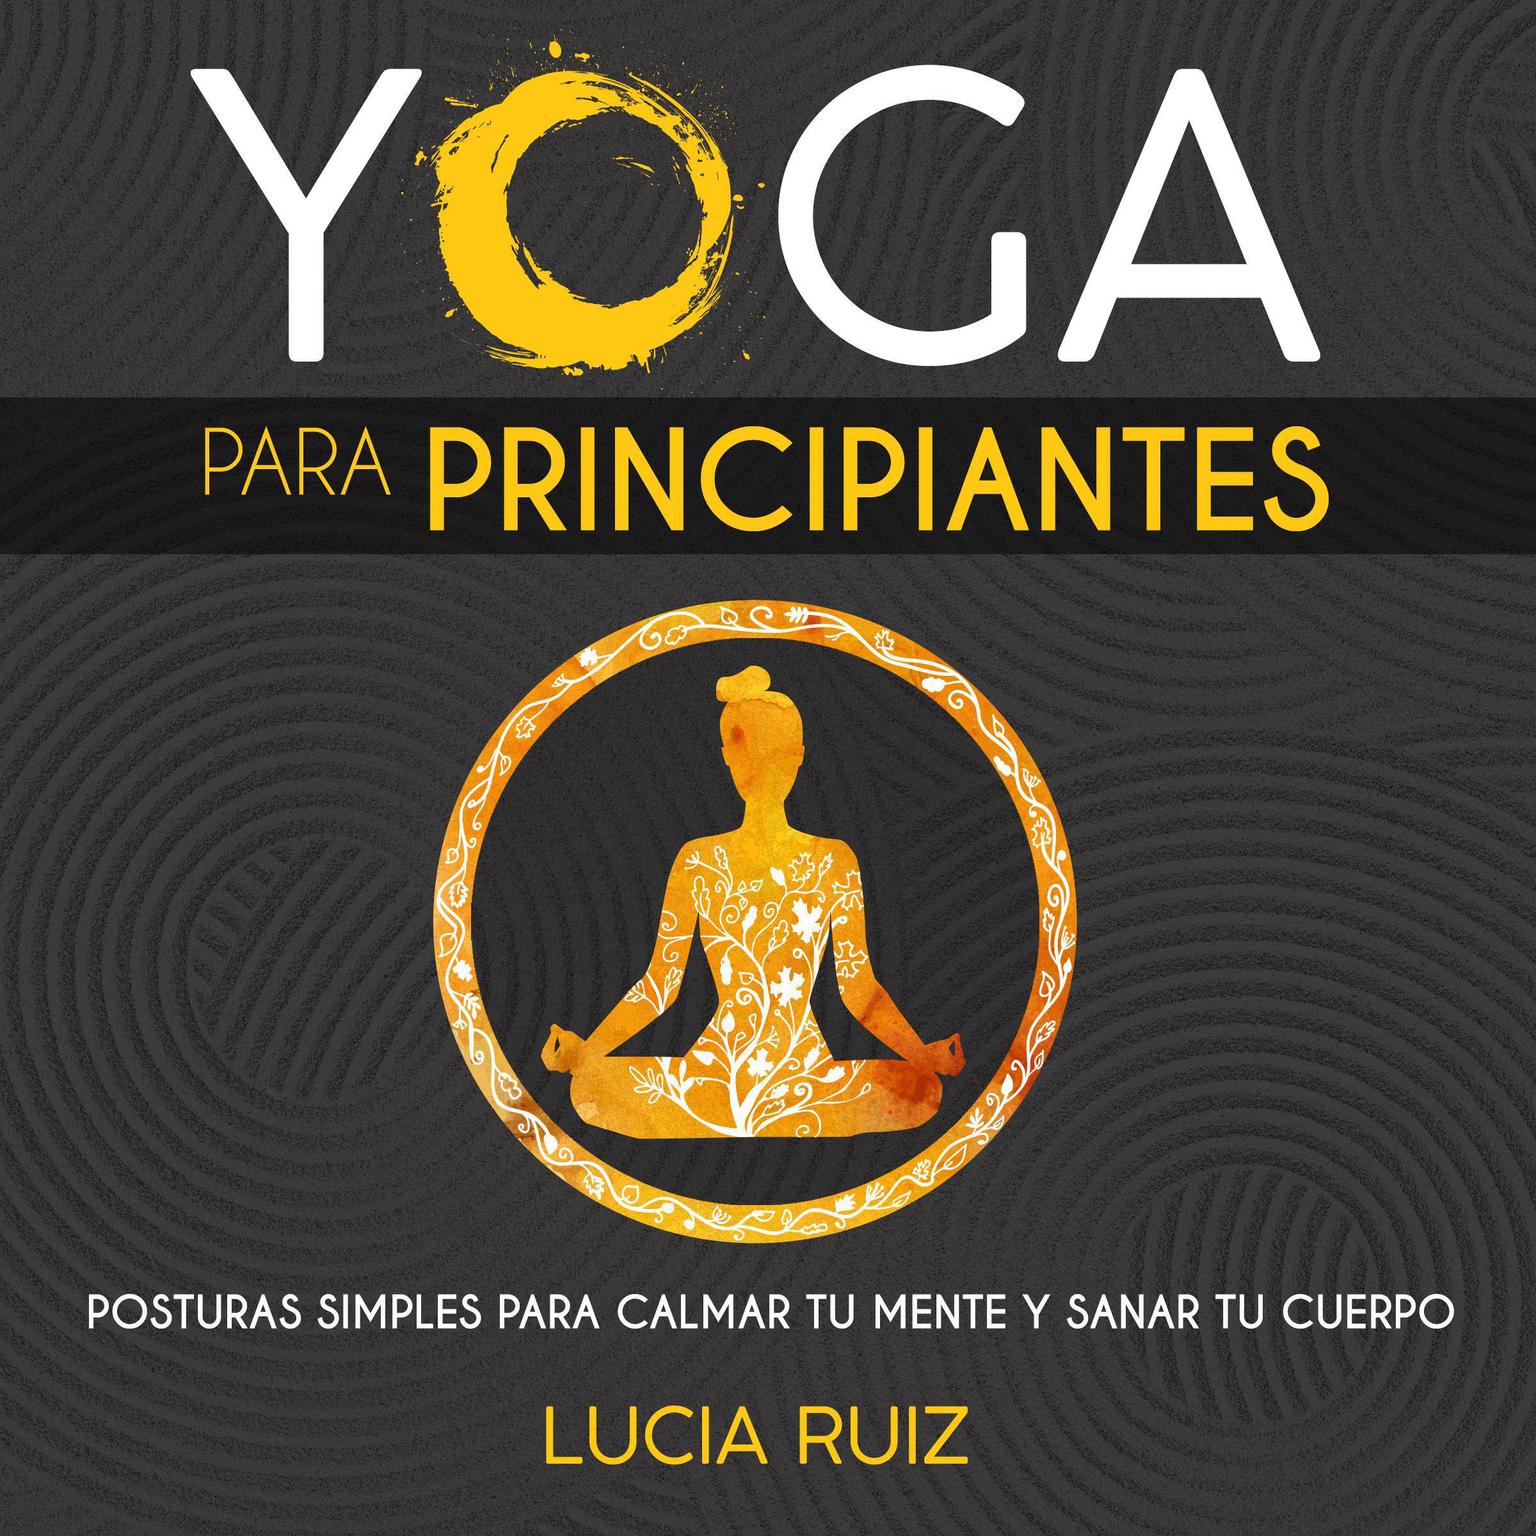 Yoga para principiantes: Posturas simples para calmar tu mente y sanar tu cuerpo Audiobook, by Lucia Ruiz